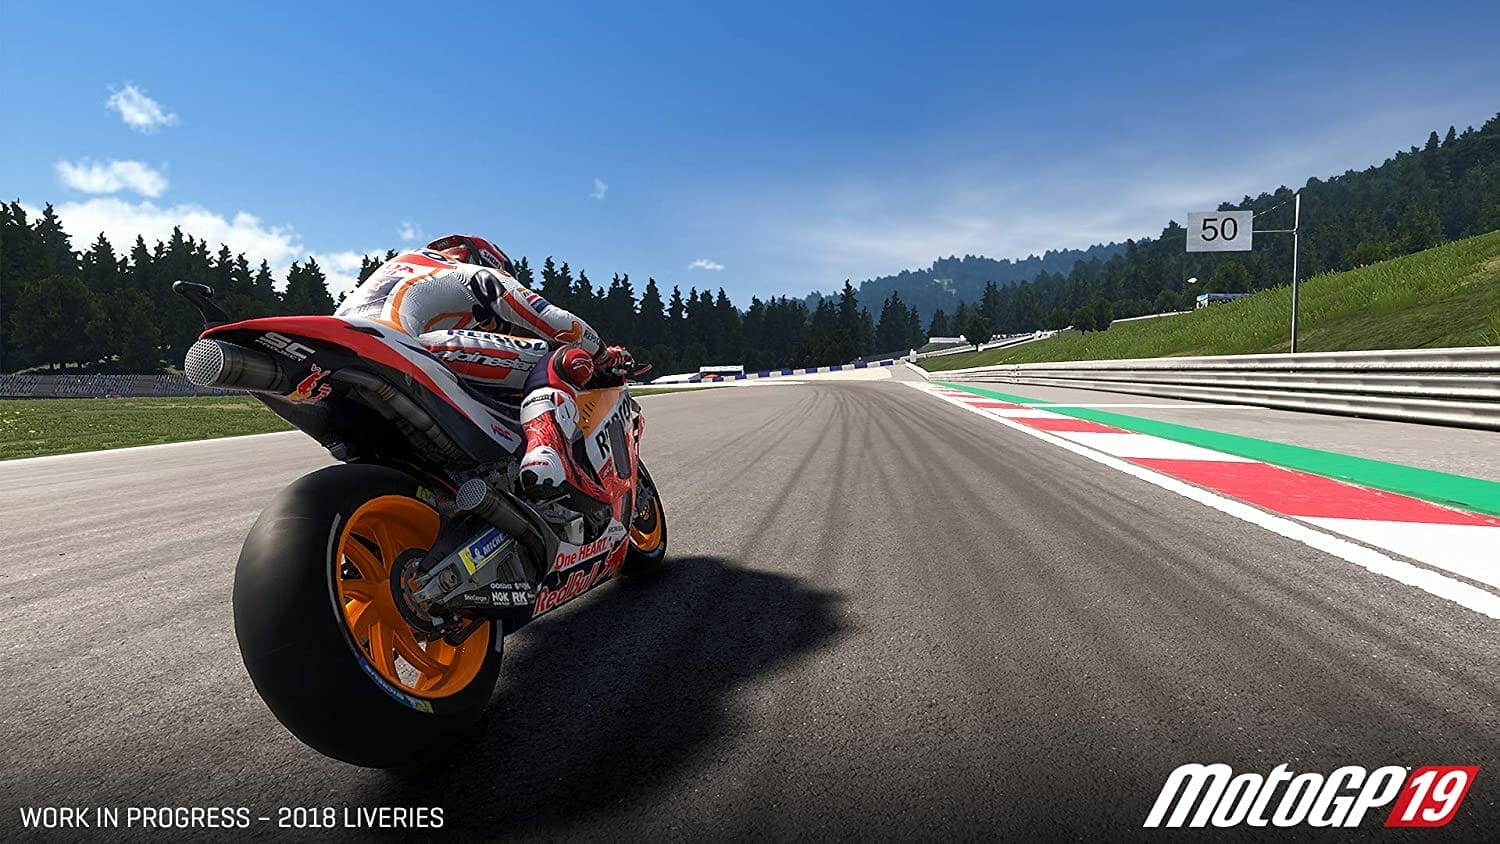 MotoGP – Statt auf der Rennstrecke fahren die echten Stars virtuell
- auch in der MOTORRAD NACHRICHTEN APP